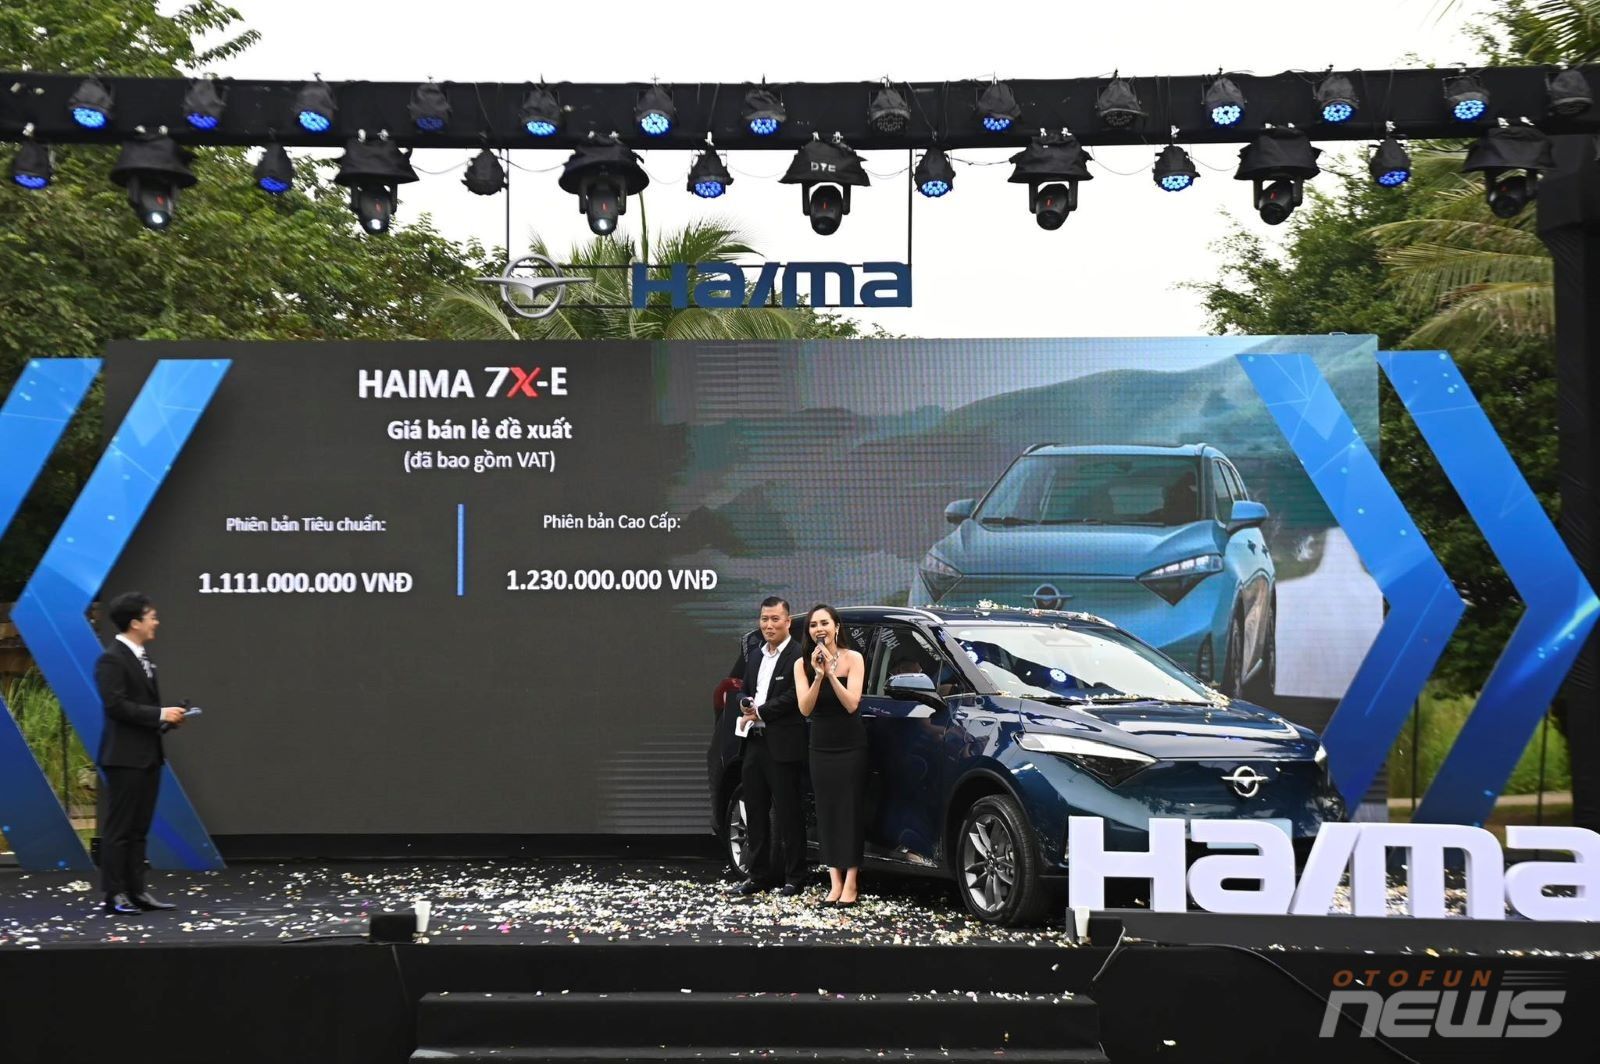 Haima 7X và 7X-E chính thức ra mắt, nhắm tới đối tượng khách hàng đã có gia đình